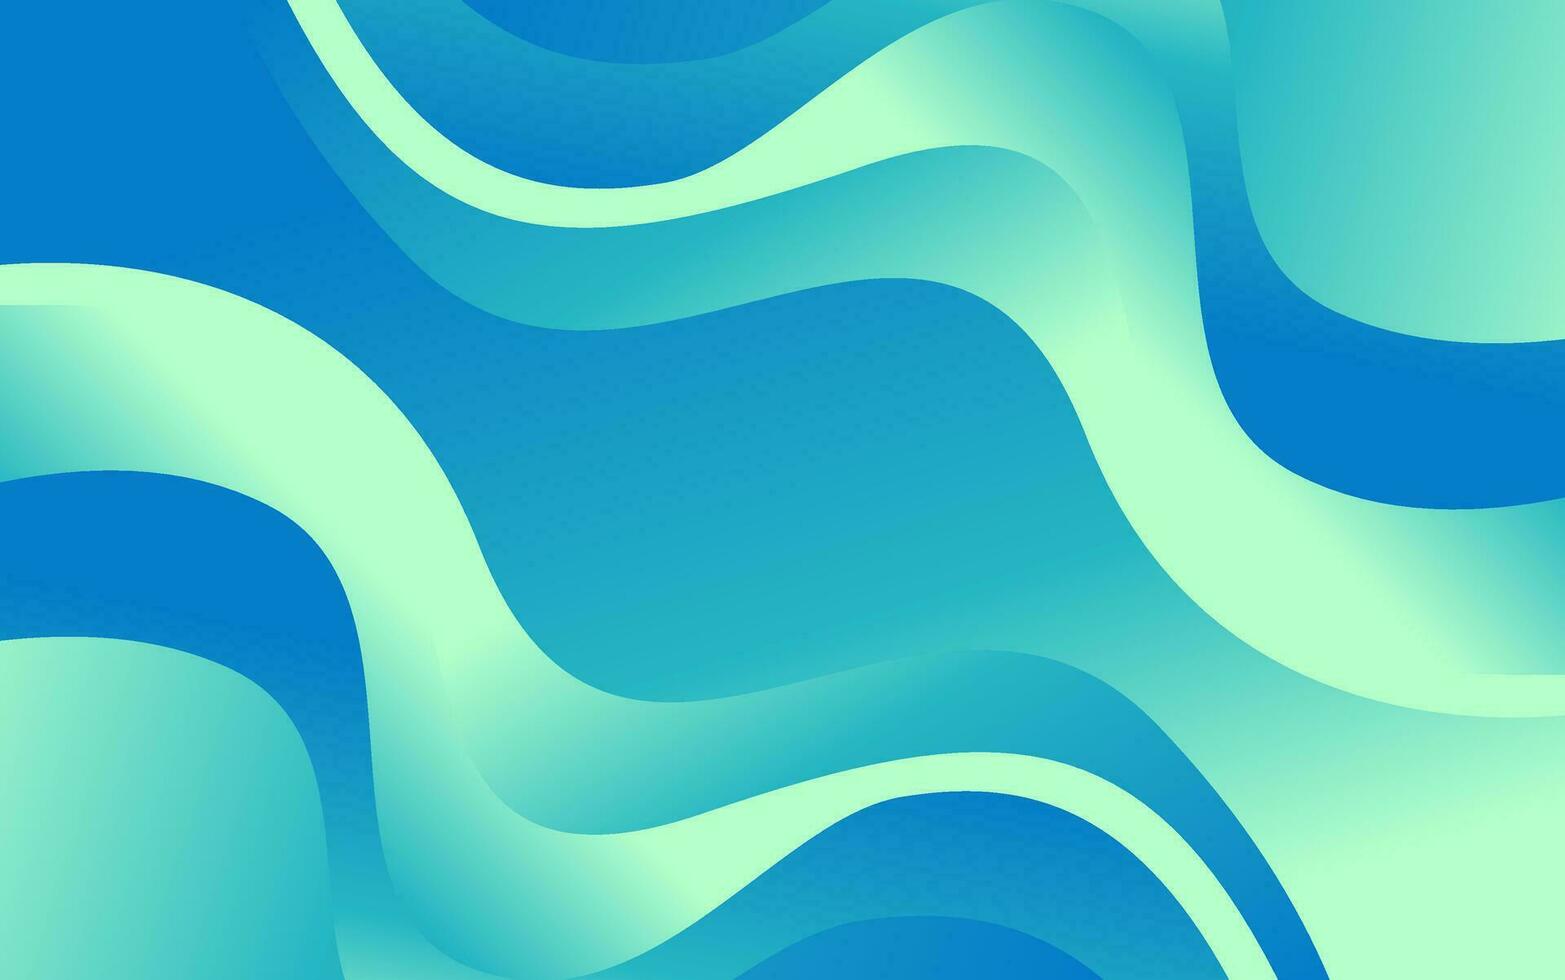 abstrakt blå flytande Vinka form modern trogen baner, affisch, omslag, bakgrund design vektor